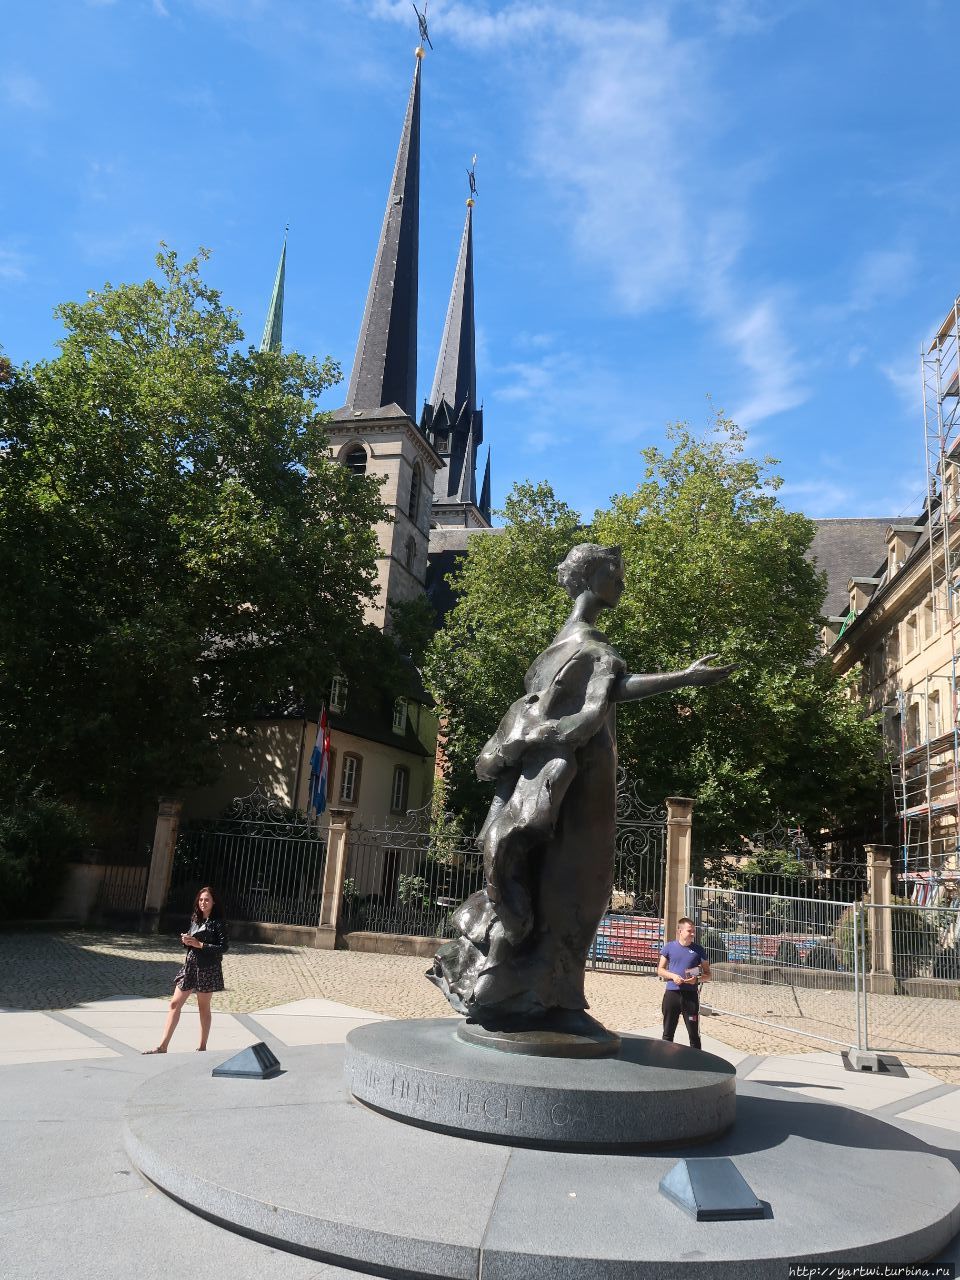 По улице Нотр Дам проходим к площади Клерффонтен и монументу à la grande-duchesse Charlotte (великая княгиня Шарлотта из Люксембурга). Княгиня Шарлотта — седьмой монарх Люксембурга и покоится в склепе, расположенного рядом собора Нотр-Дам. Люксембург, Люксембург